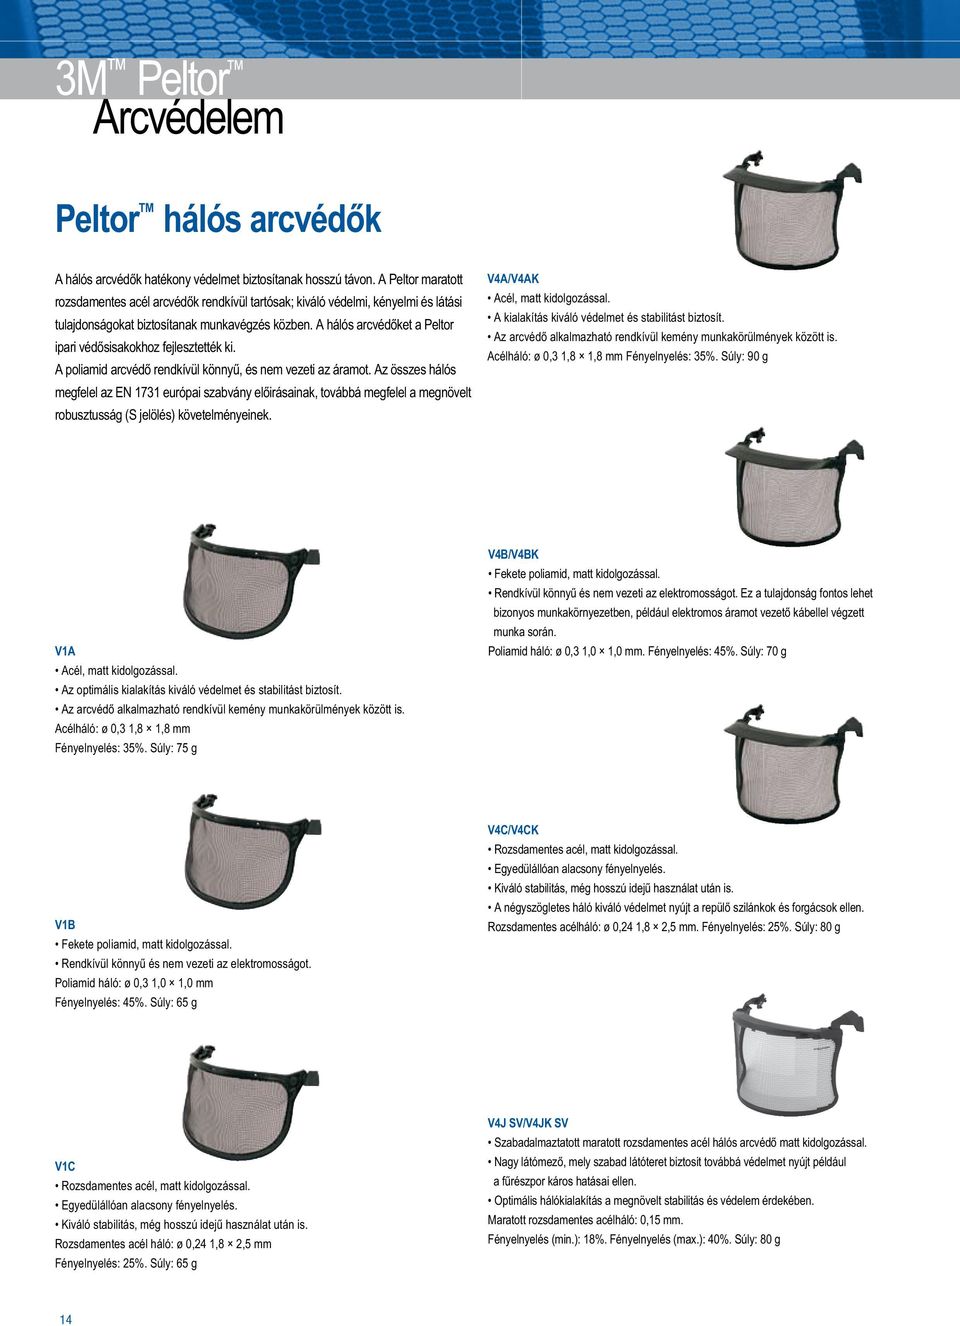 A hálós arcvédőket a Peltor ipari védősisakokhoz fejlesztették ki. A poliamid arcvédő rendkívül könnyű, és nem vezeti az áramot.